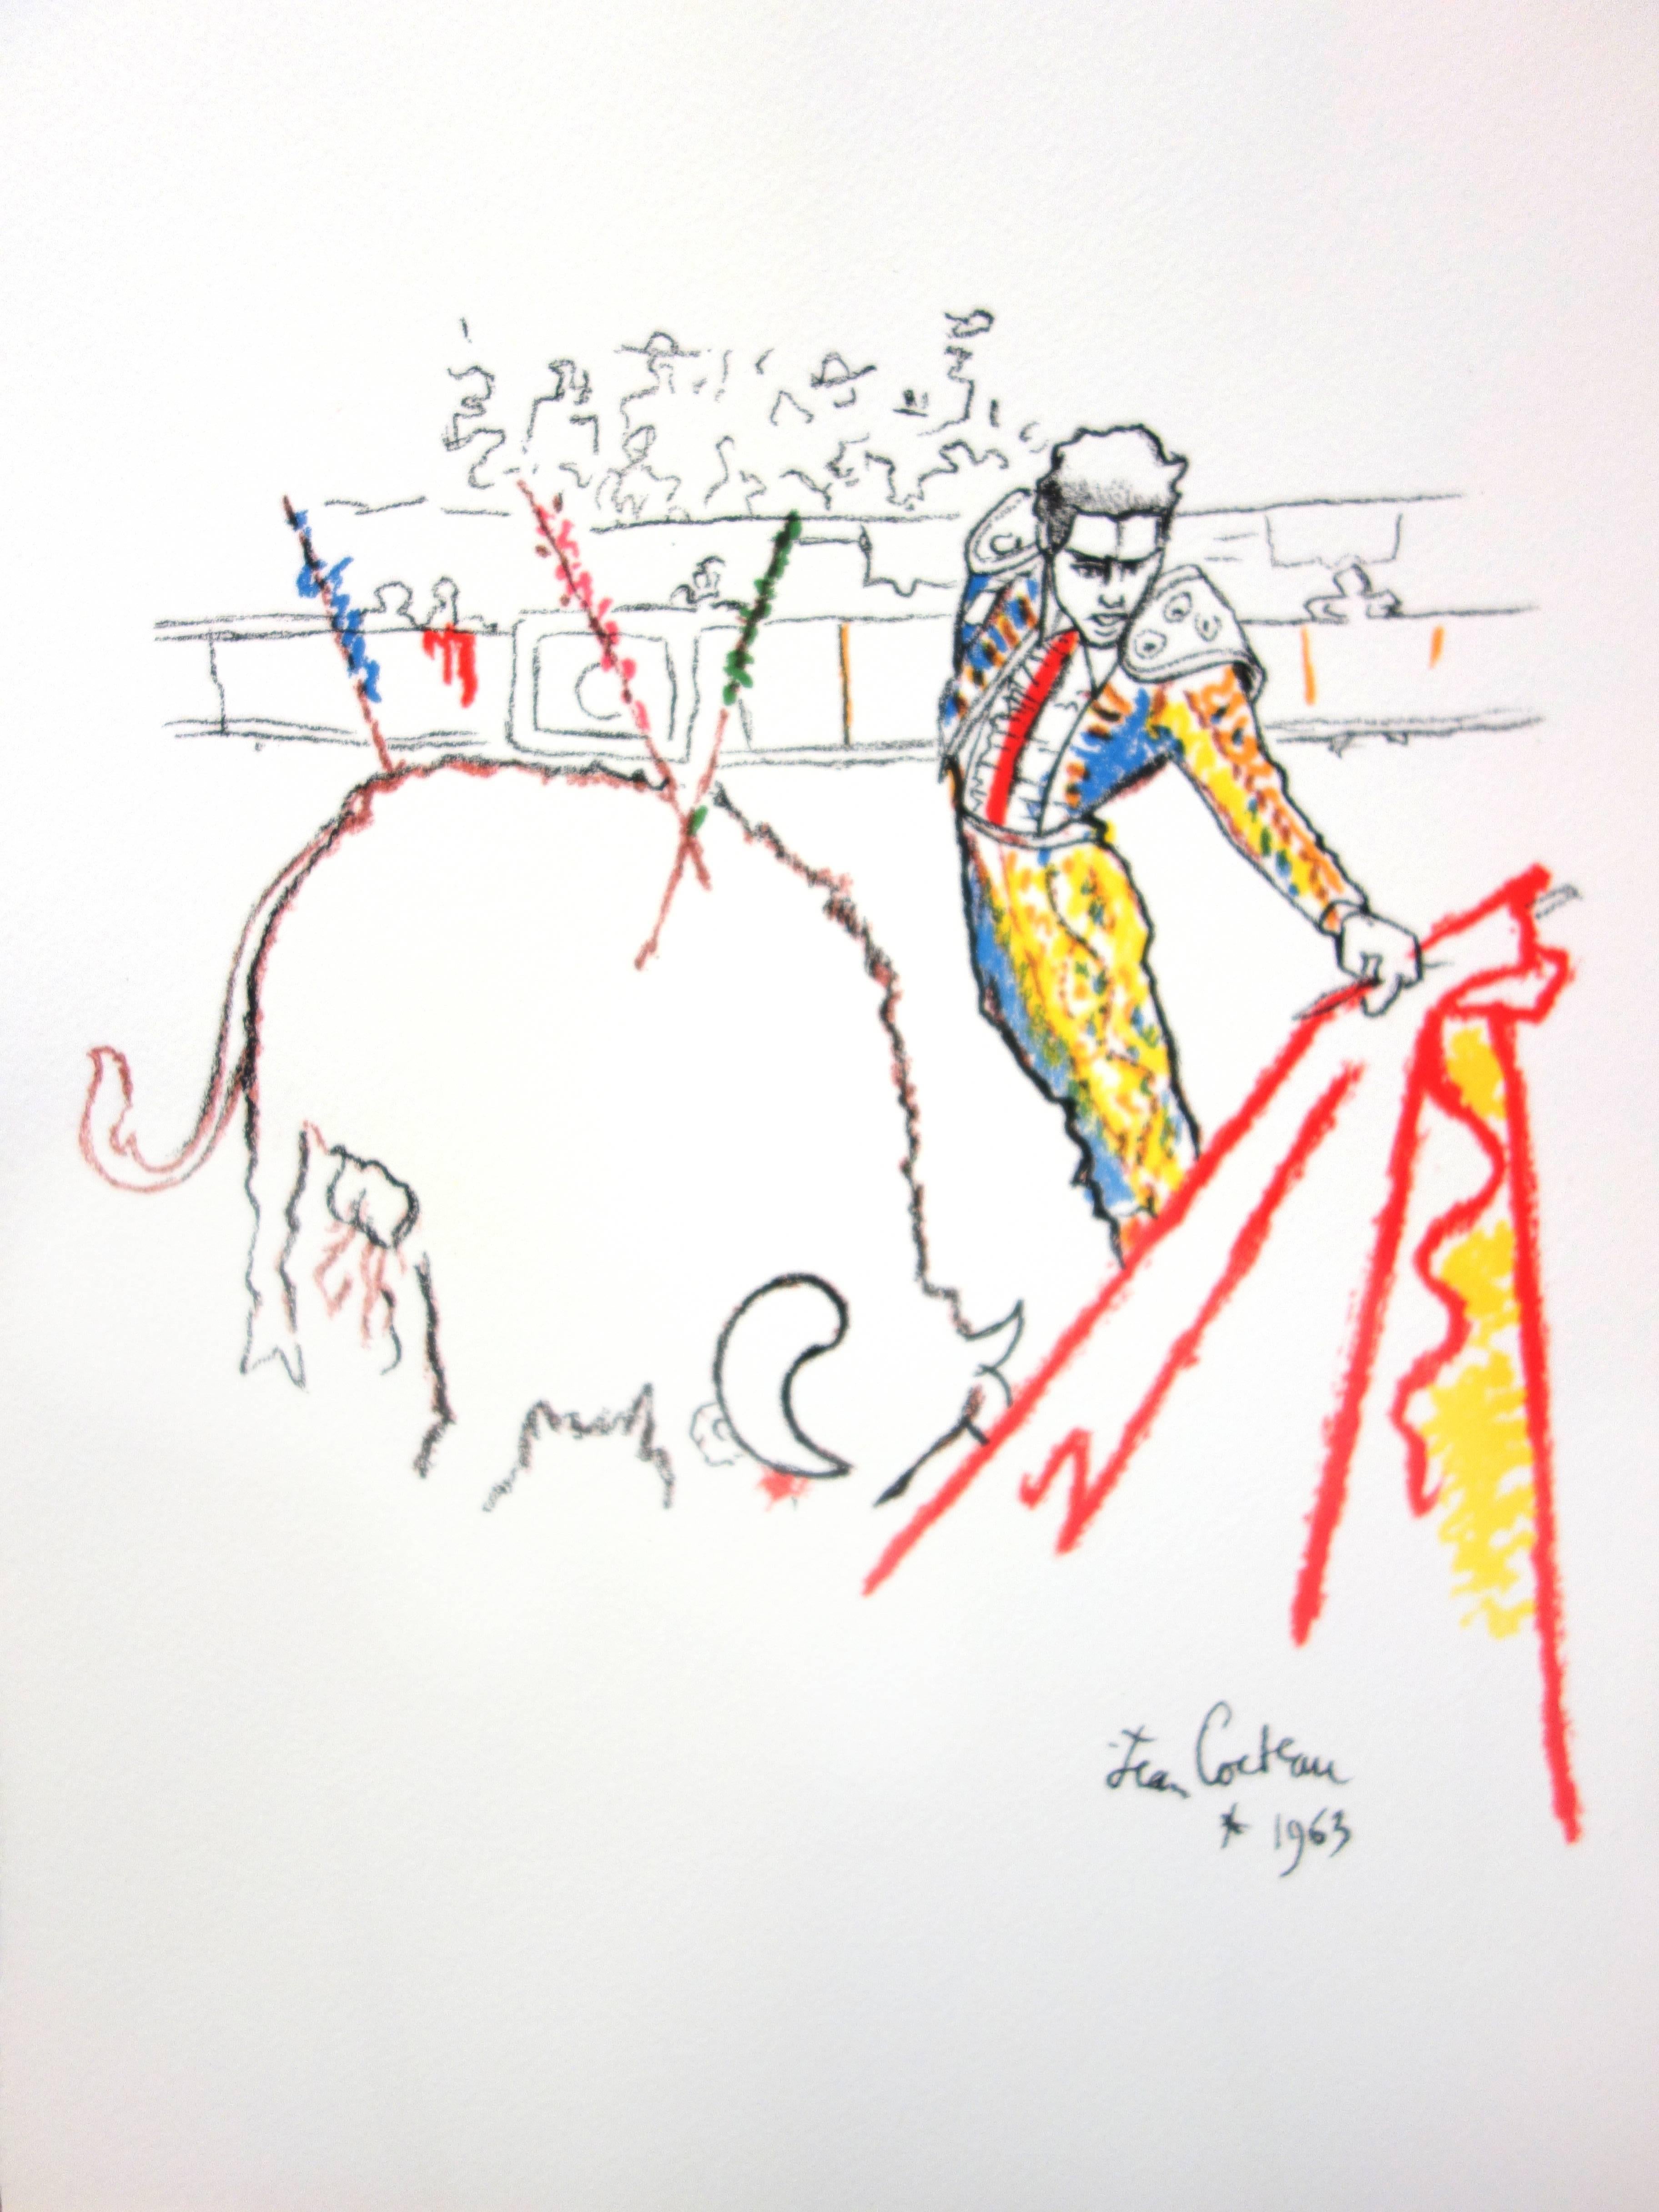 Original-Lithographie von Jean Cocteau
Titel: Taureaux
In der Platte signiert
Abmessungen: 40 x 30 cm
Auflage: 200
Luxuriöse Printausgabe aus dem Portfolio von Trinckvel
1965
Aus der letzten Mappe, an der Cocteau arbeitete und die kurz vor seinem